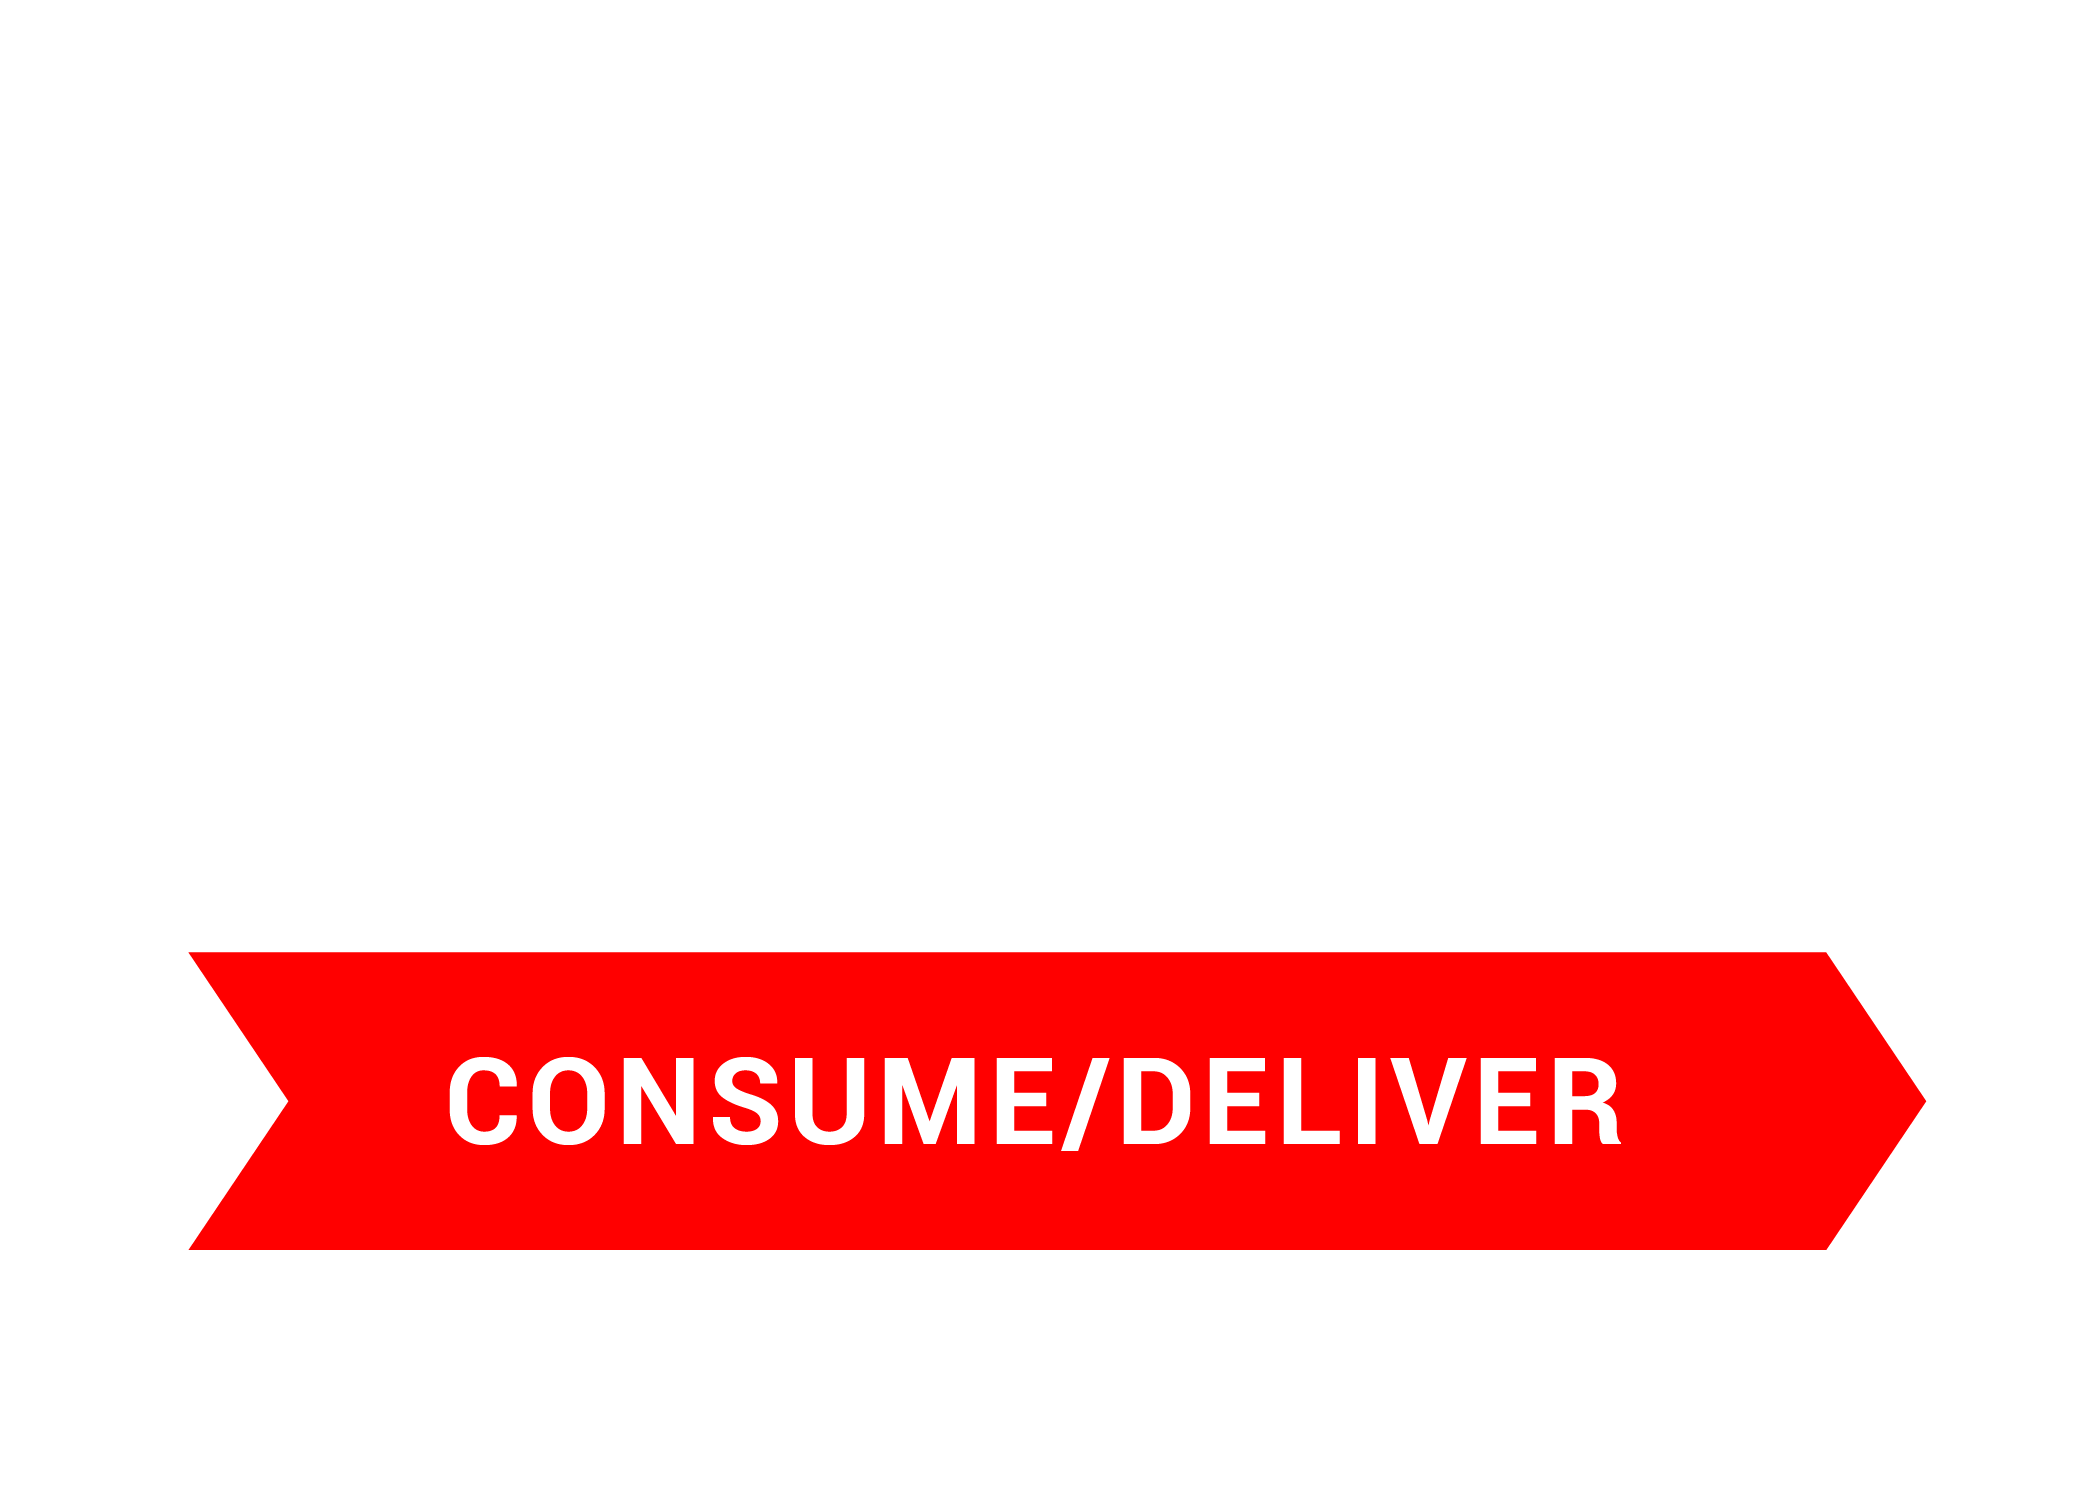 consume/deliver icon